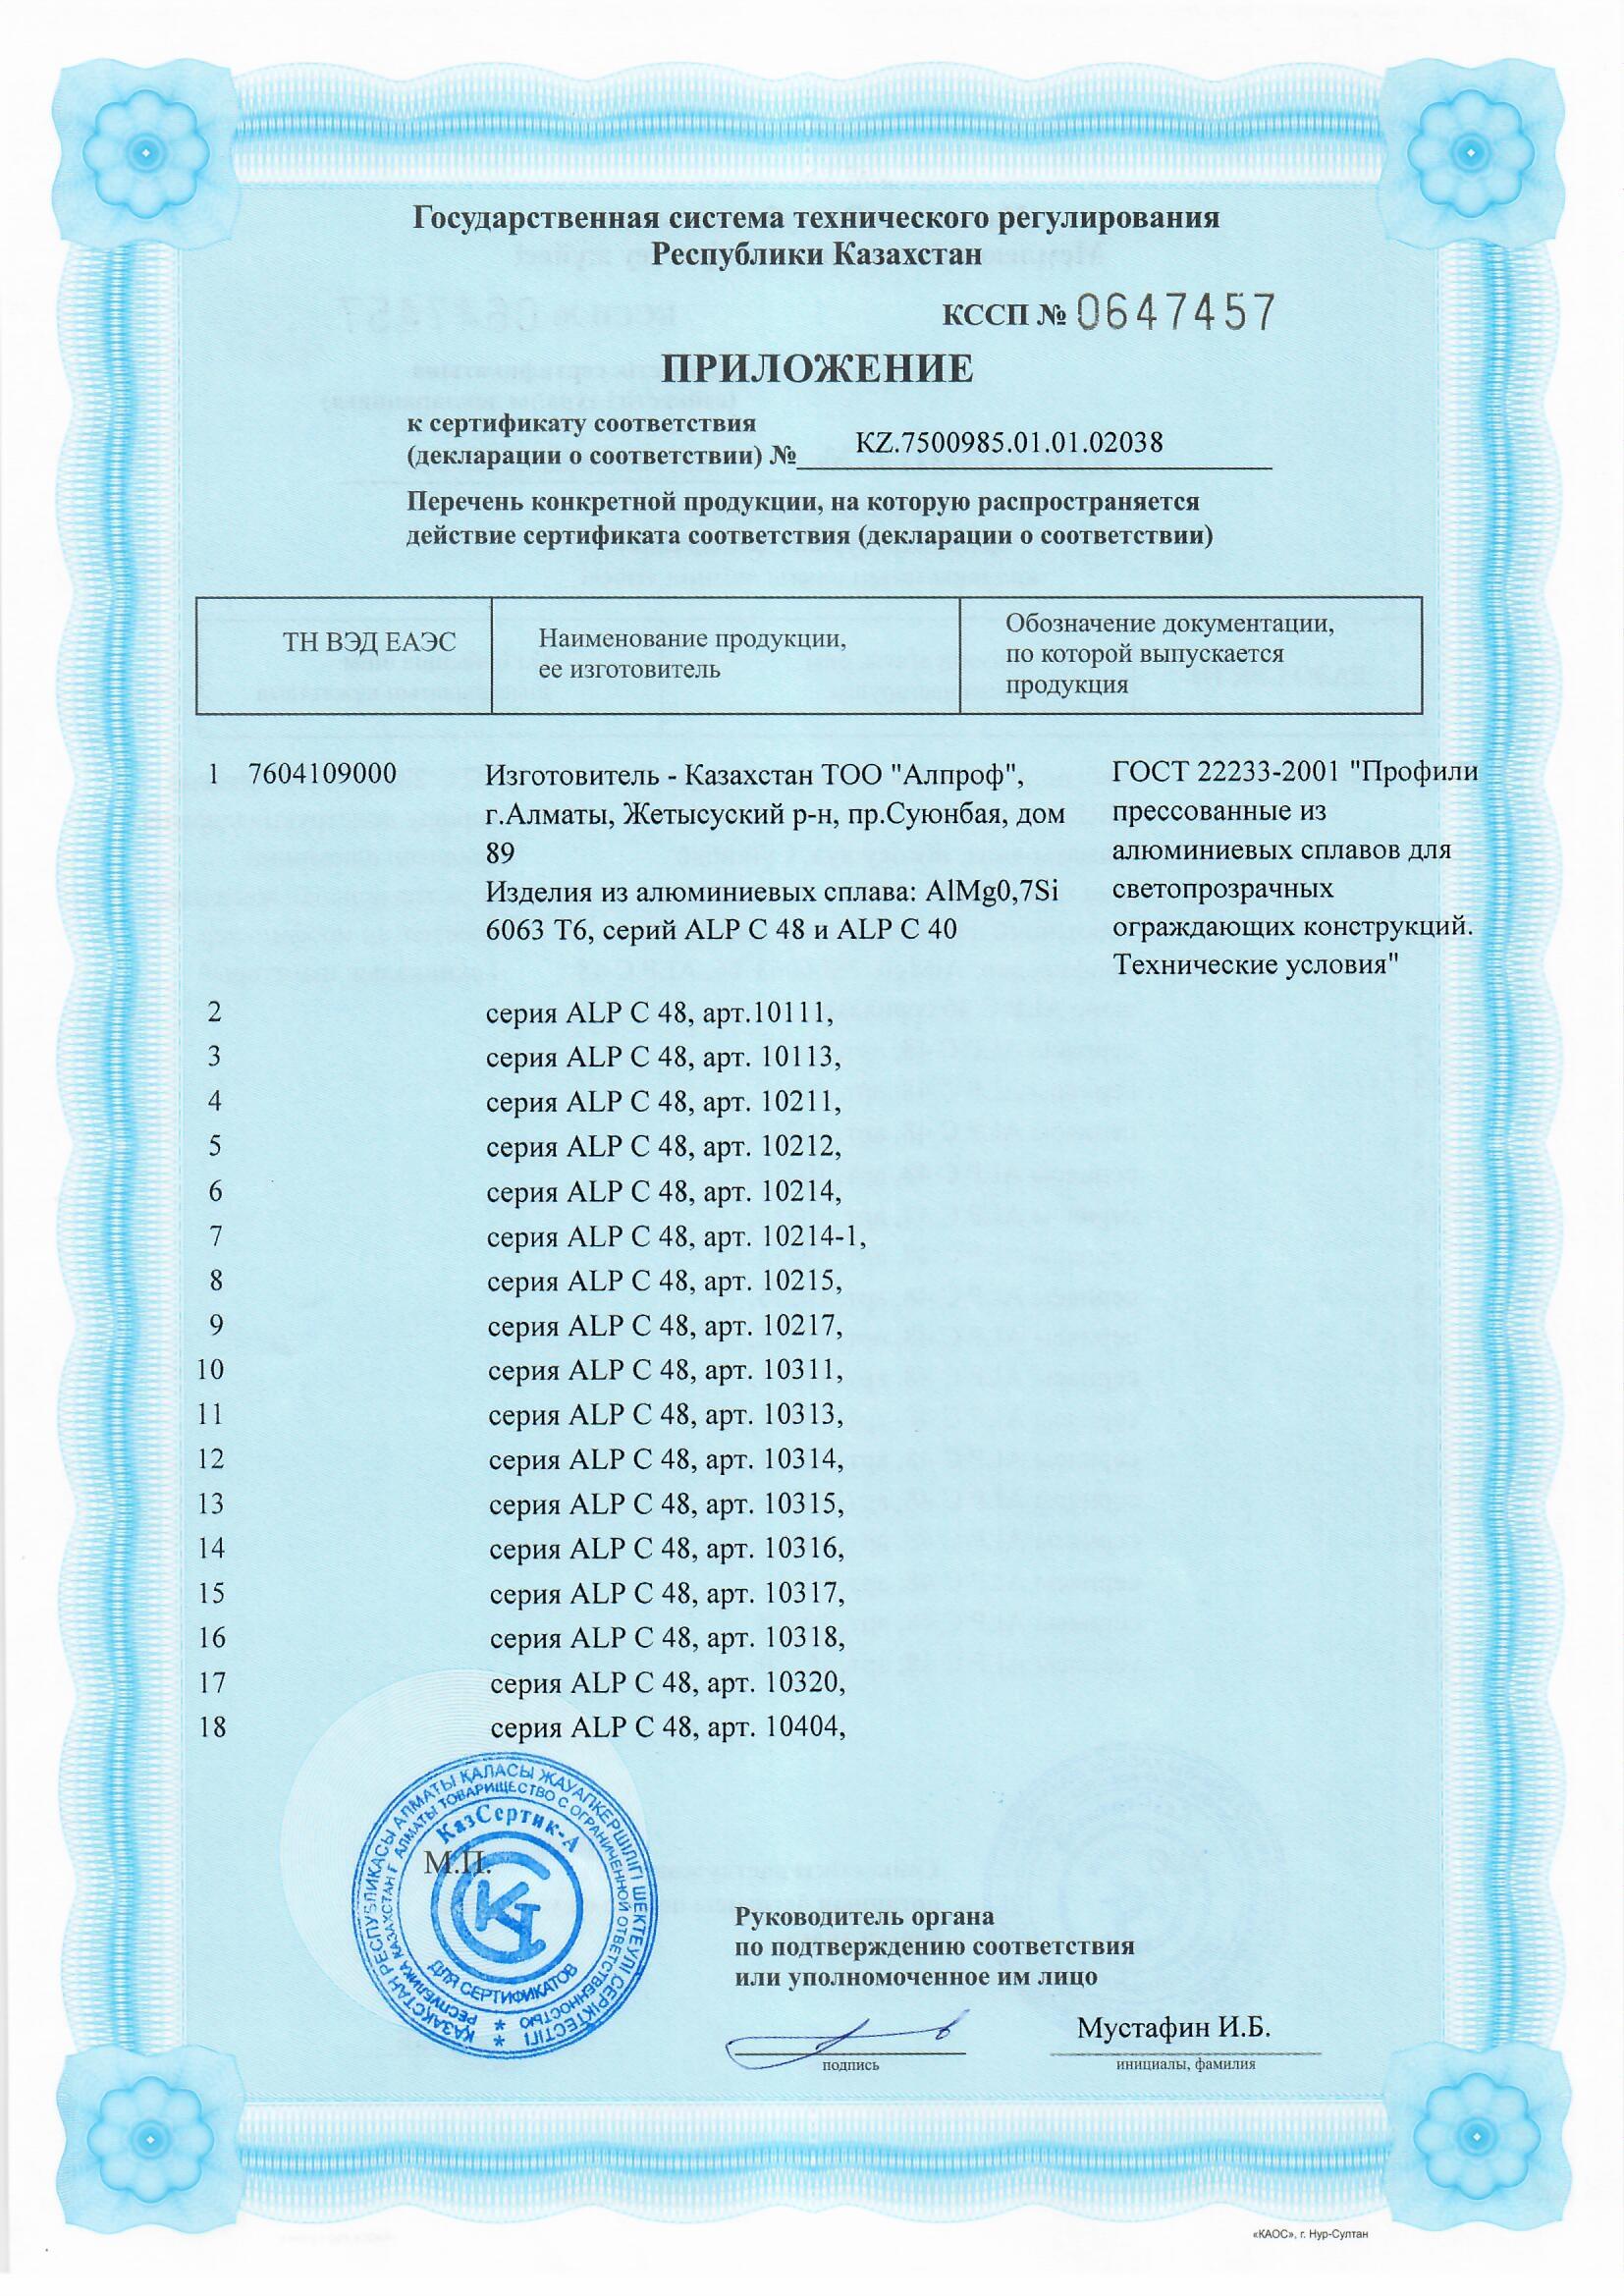 Сертификат на серию ALP C 40 и 48